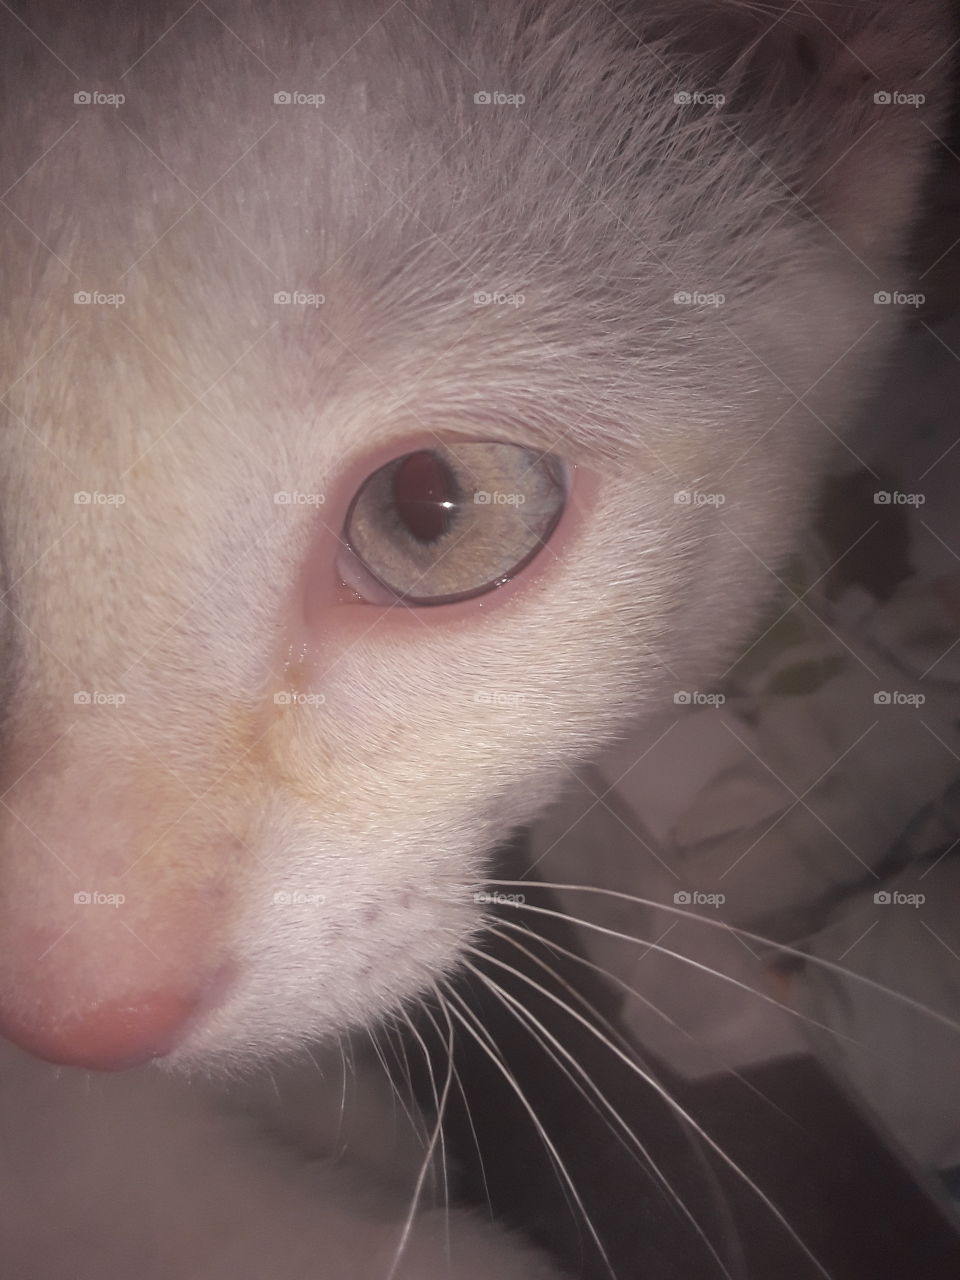 in the eye of a kitten